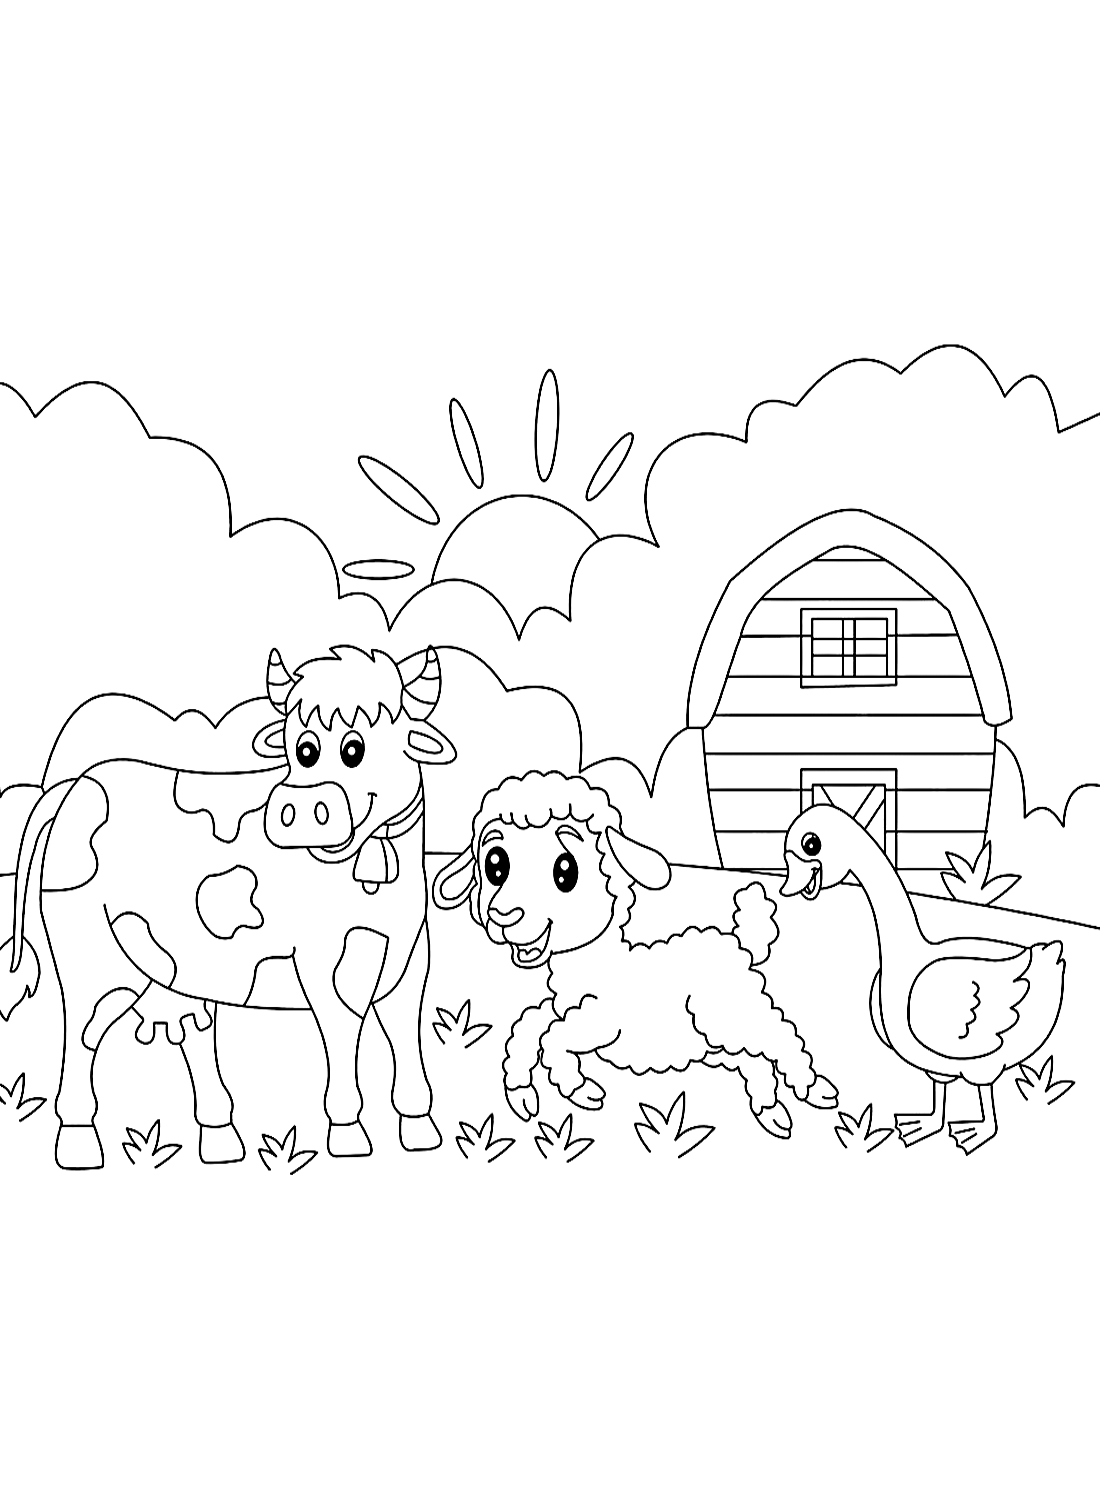 Dibujo para colorear de vaca en la granja de Cow